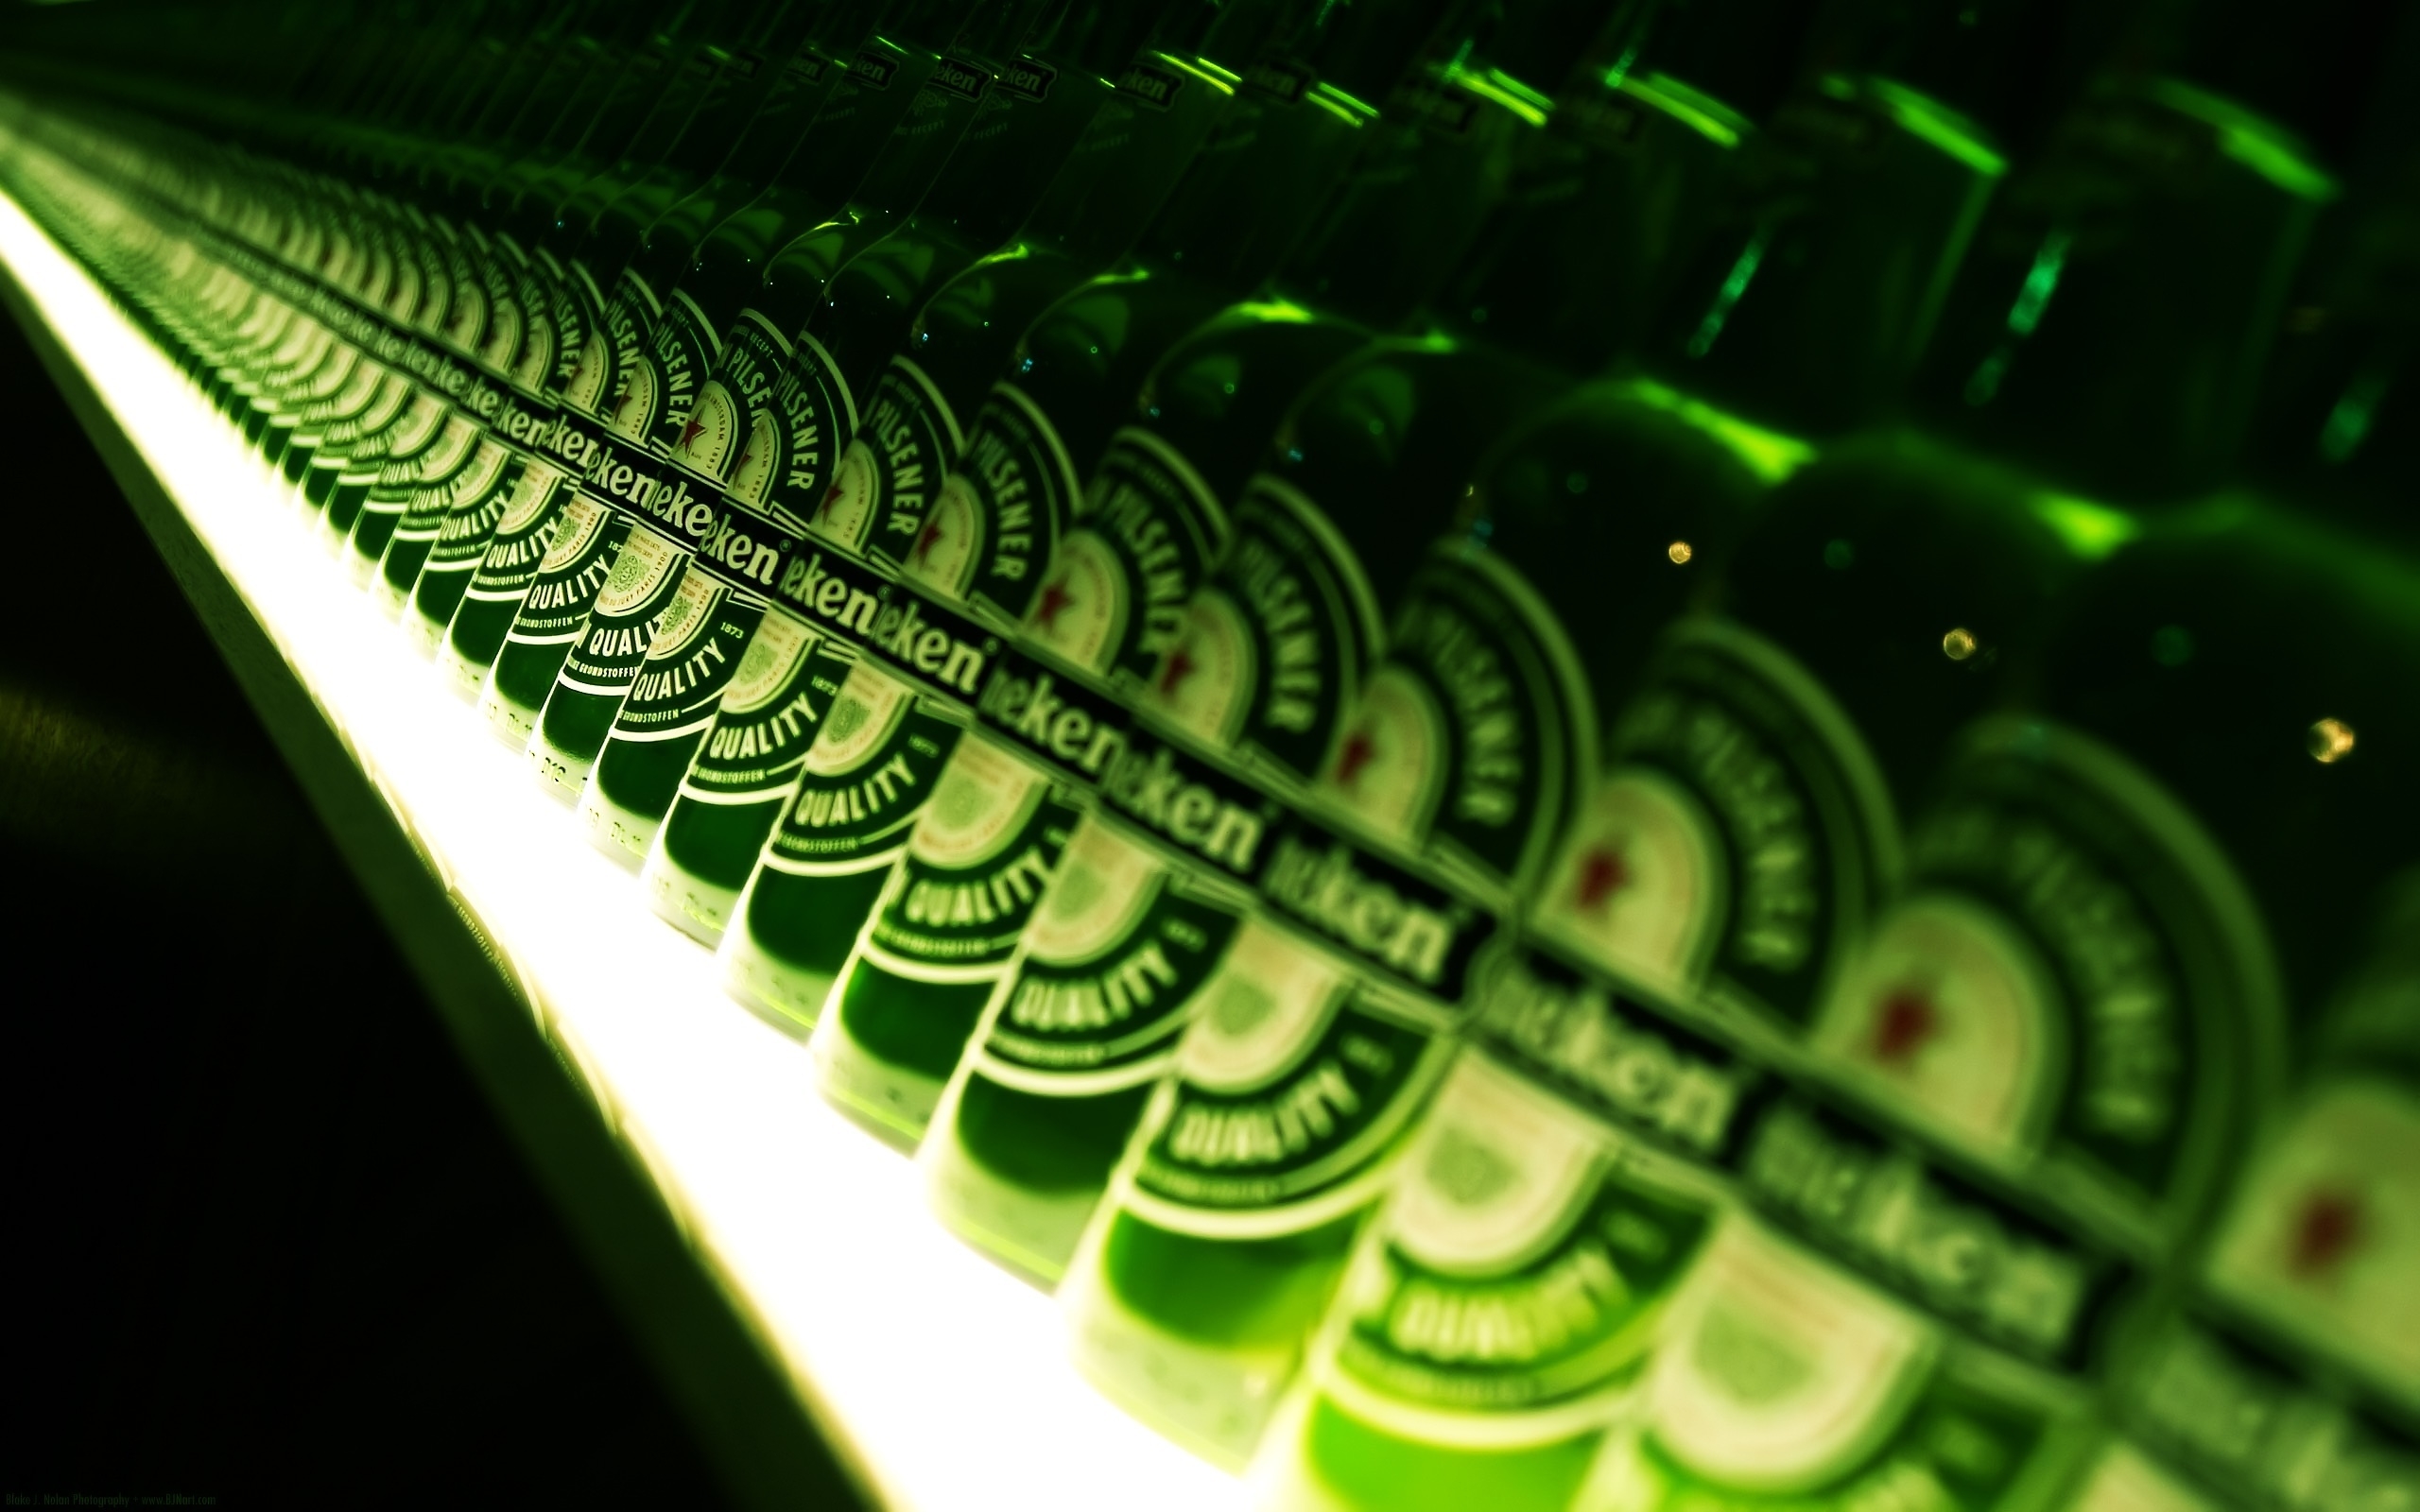 Heineken Anyone for 2560 x 1600 widescreen resolution